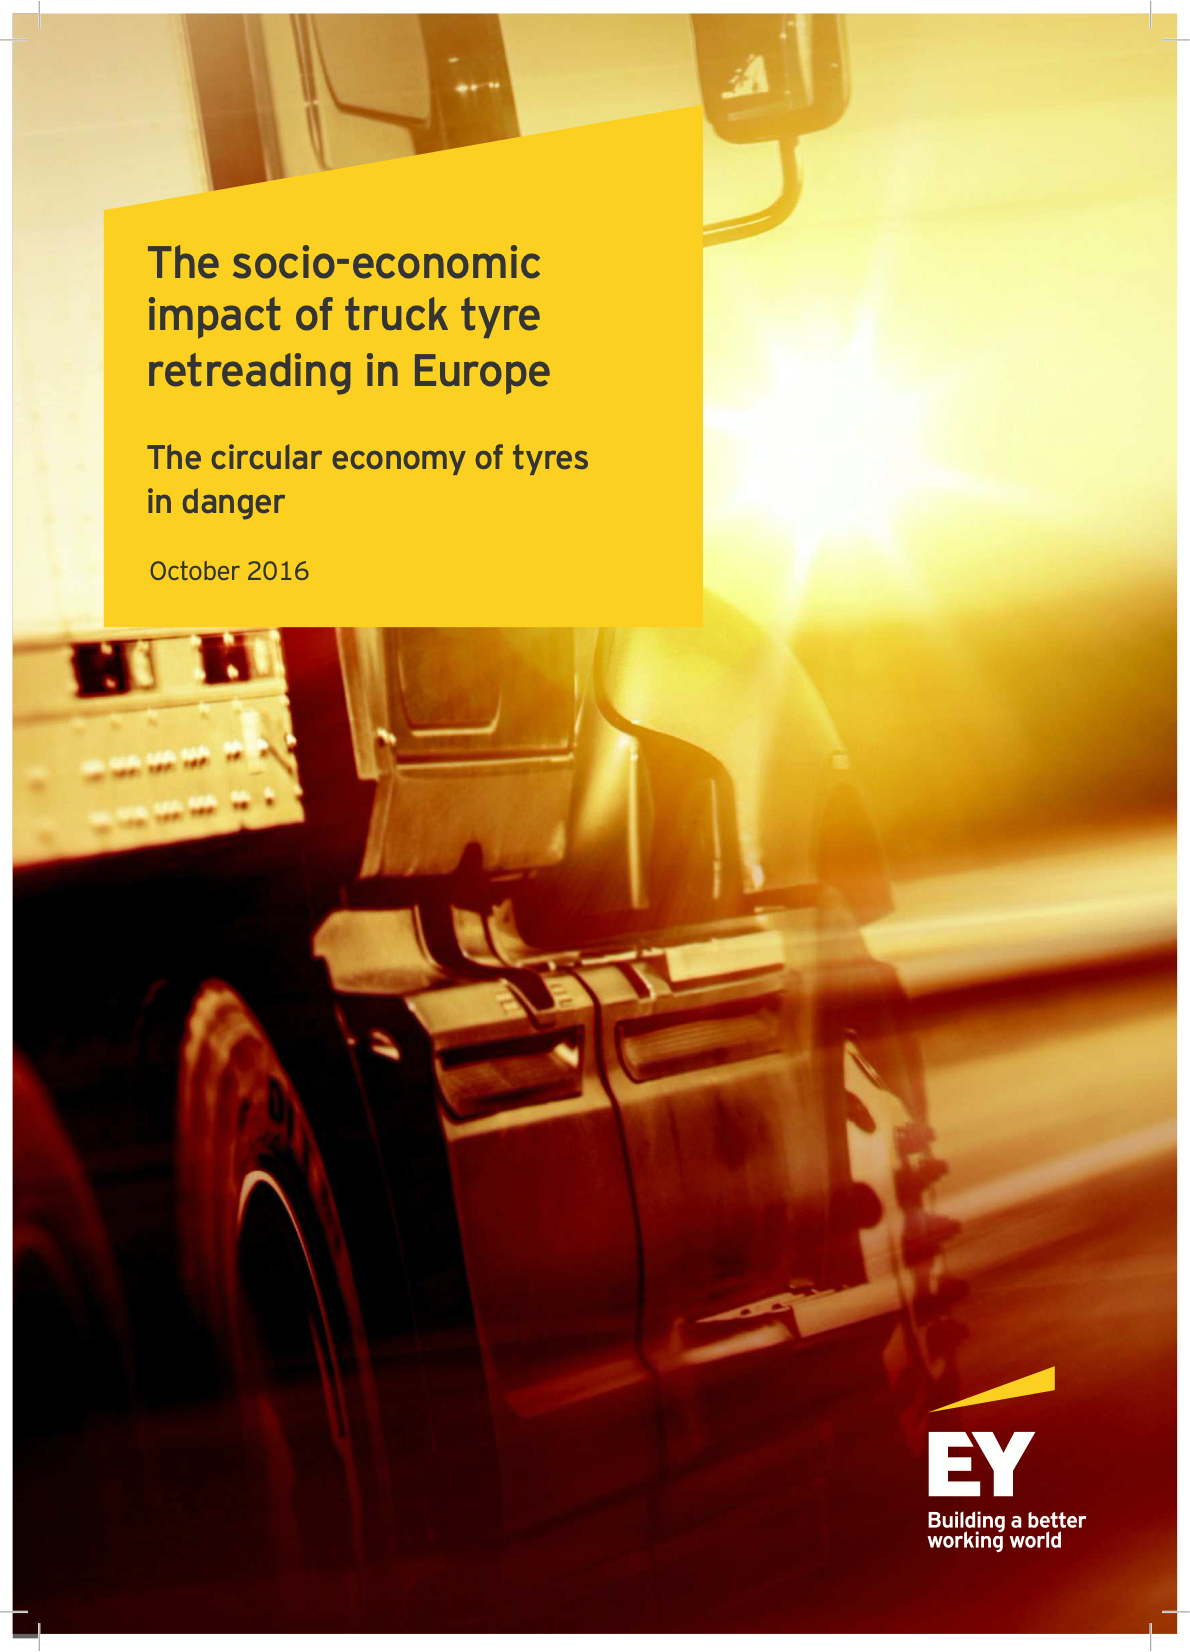 The socio-economic impact of truck tyre retreading in Europe